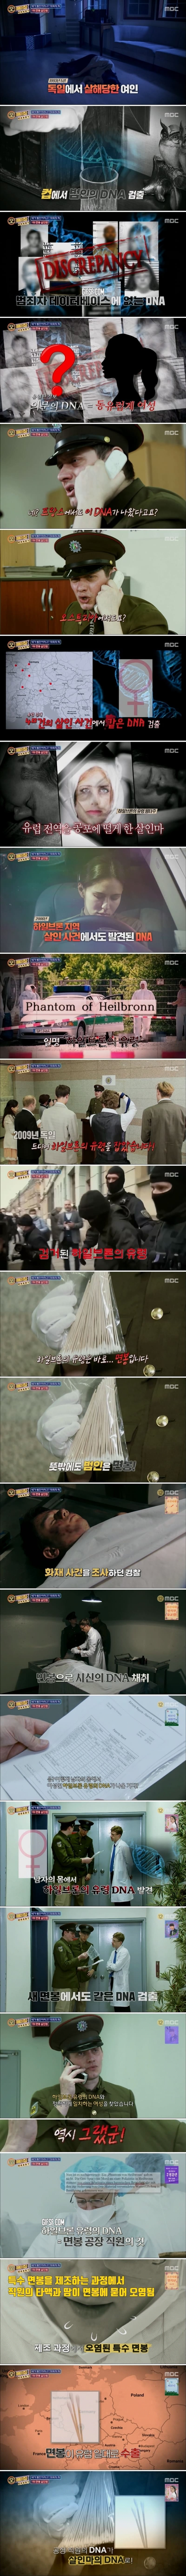 오메이징] 면봉 살인범.jpg